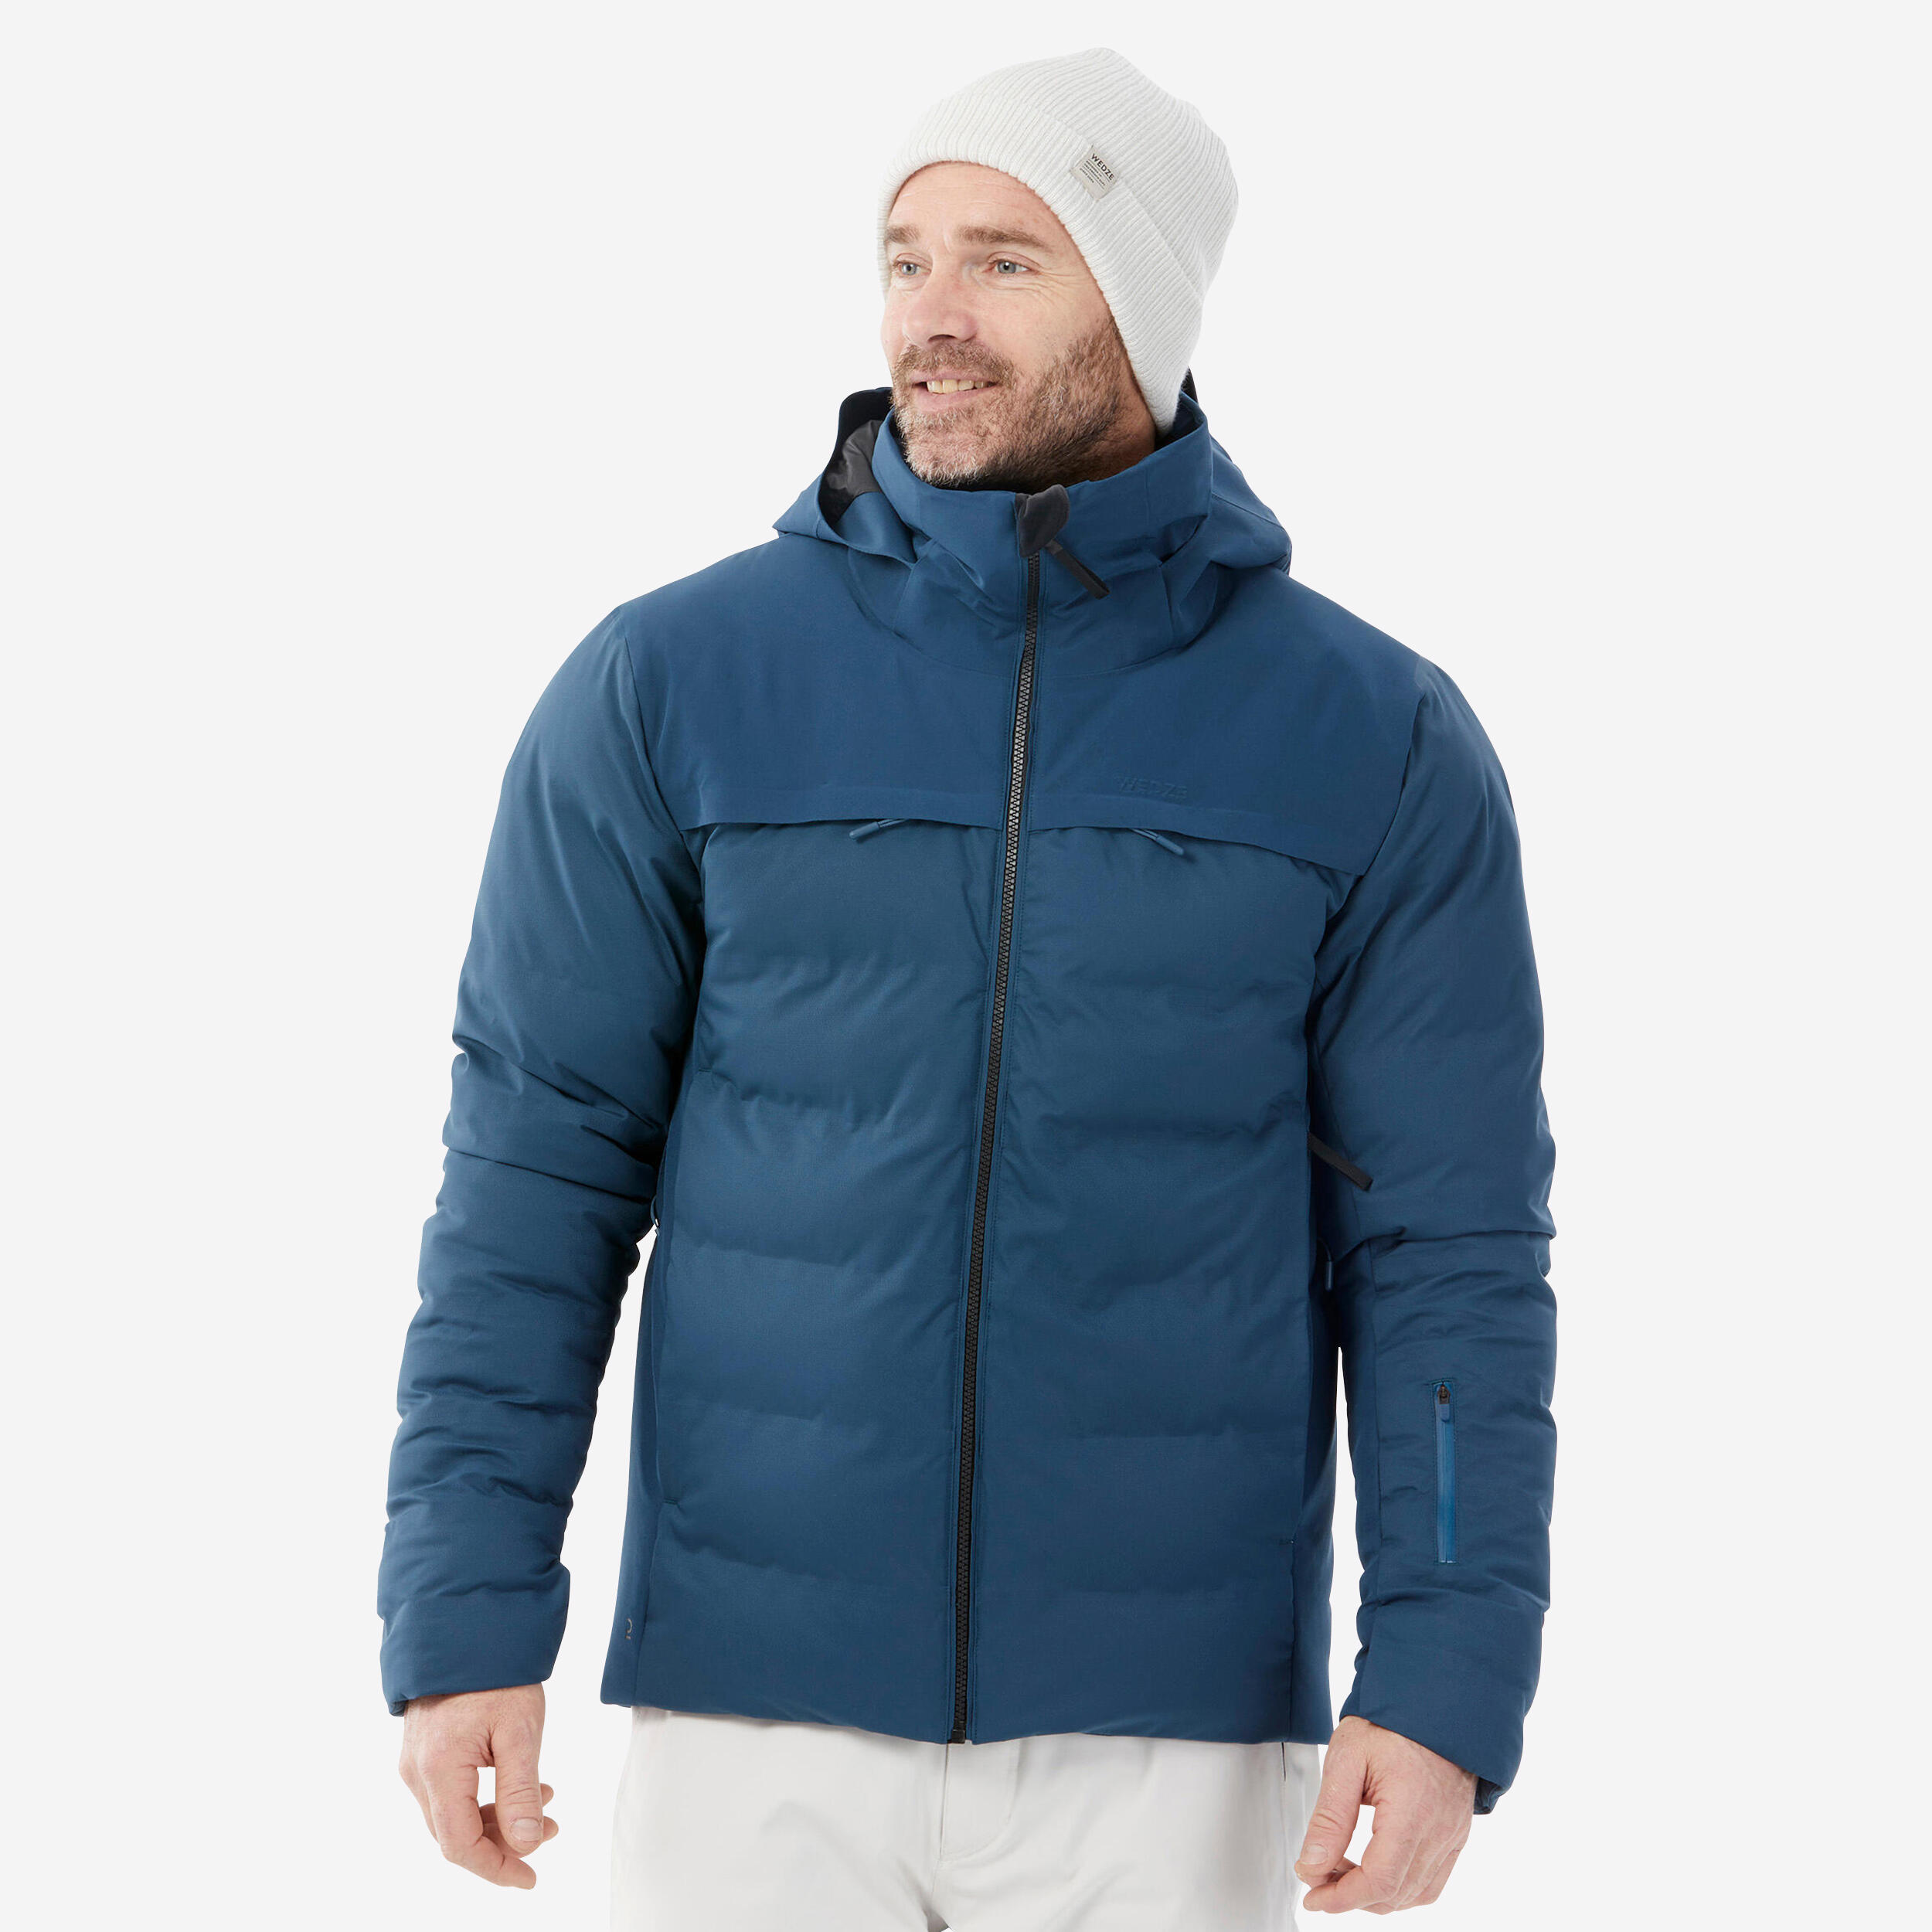 Image of Men’s Ski Jacket - 900 Blue